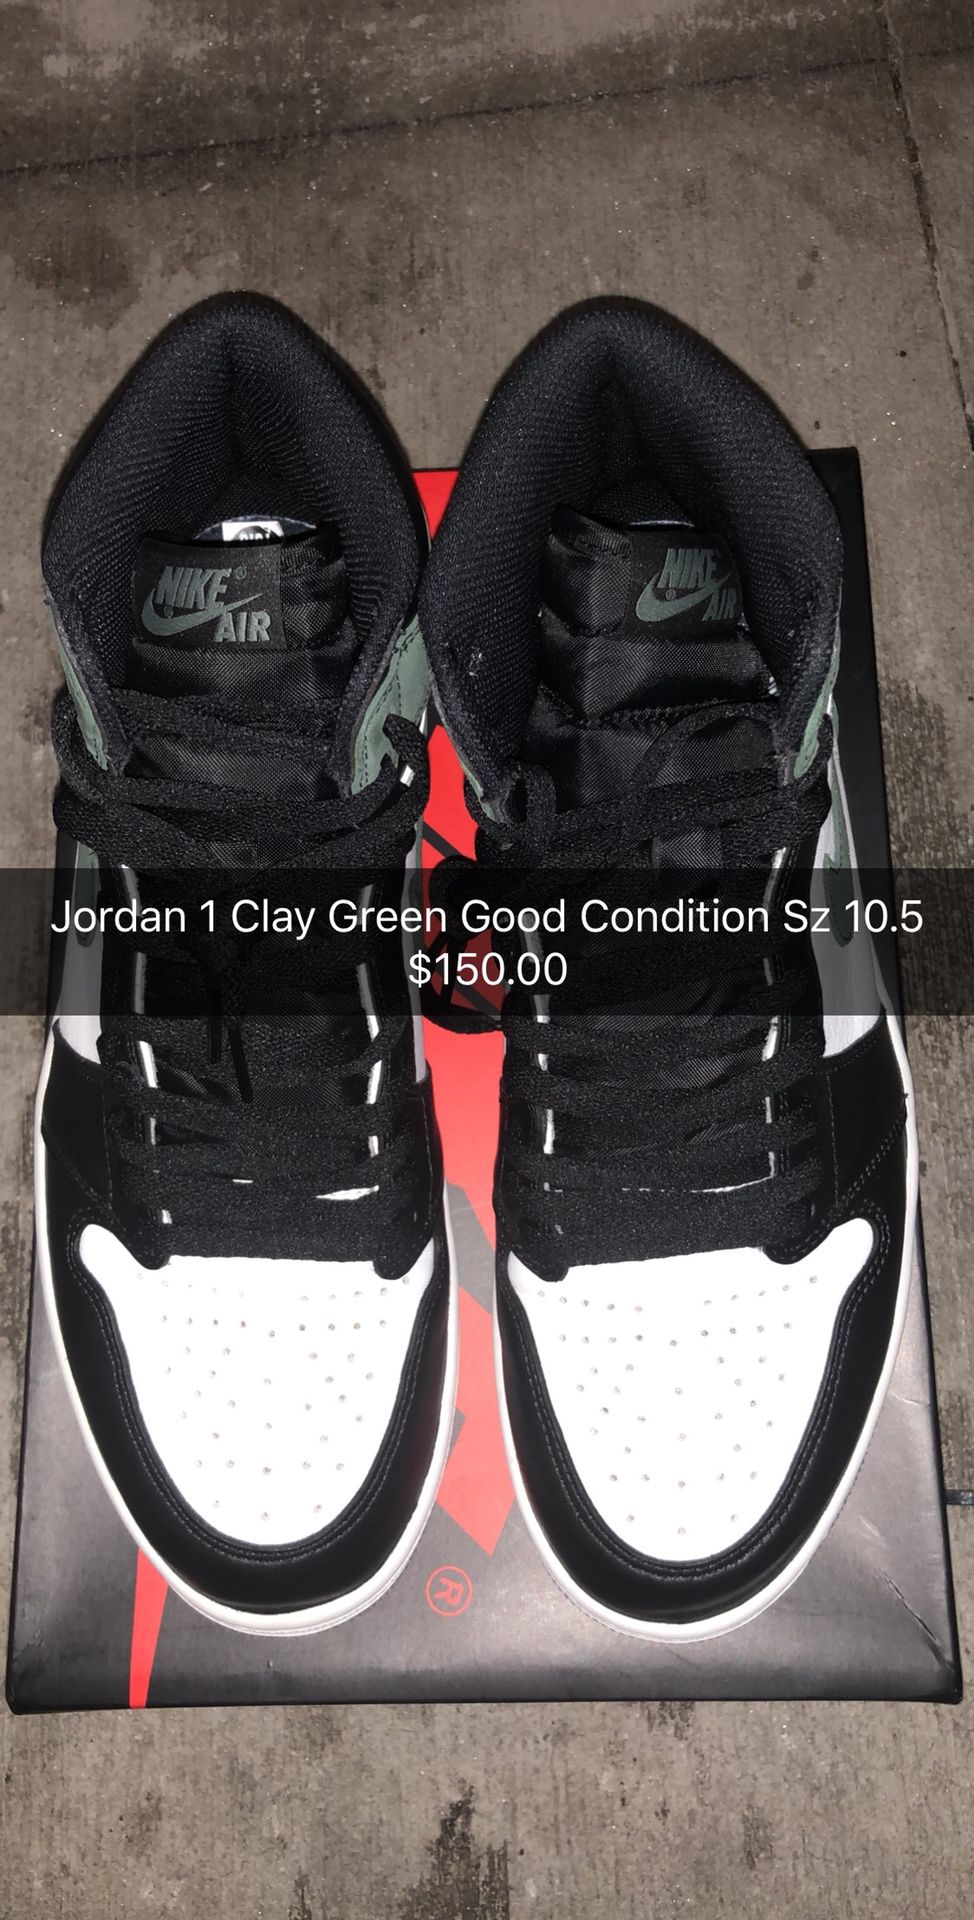 Jordan 1 Clay Green Good Condition